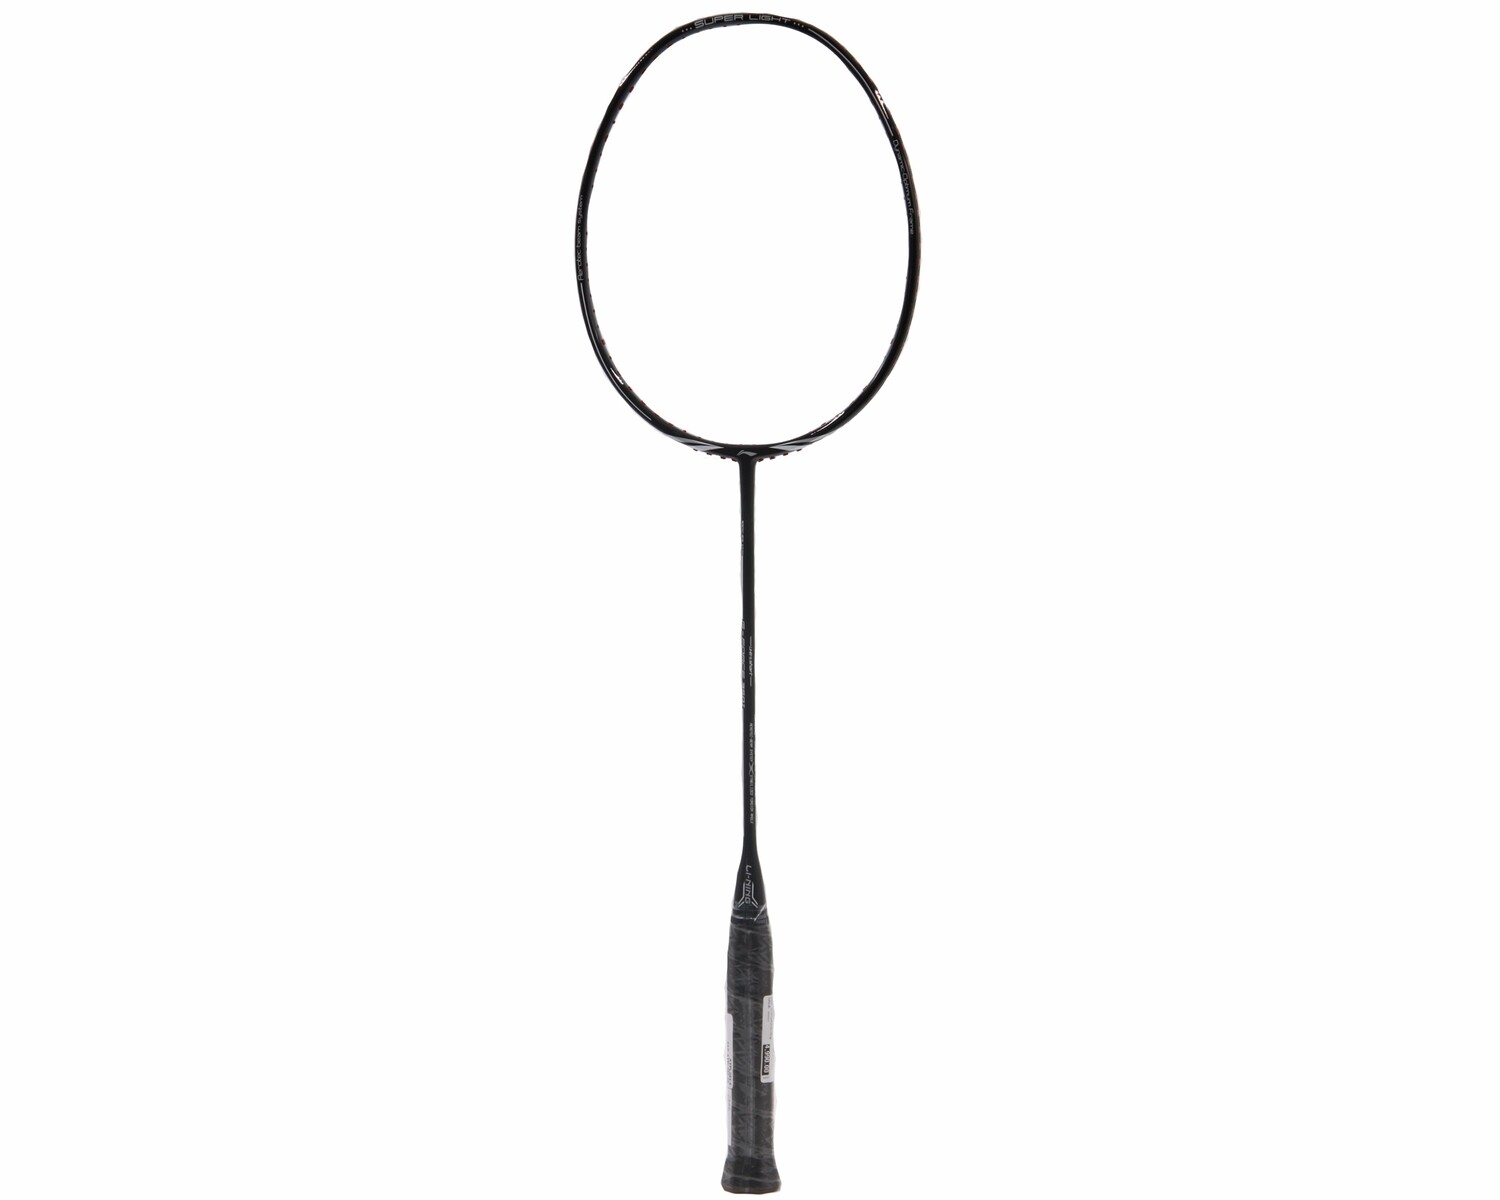 G-Force 350 II Badminton Racquet